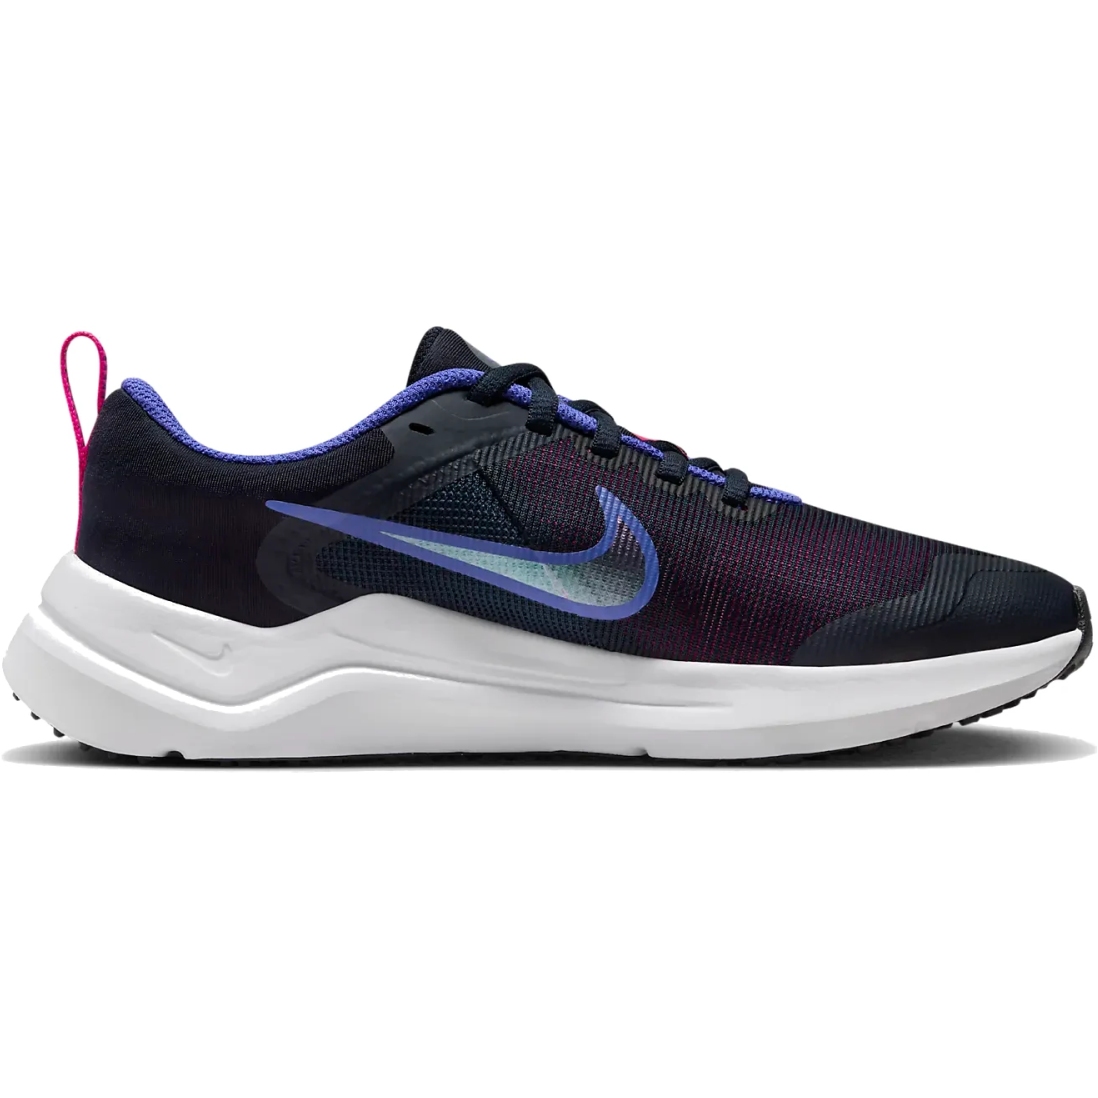 Productfoto van Nike Downshifter 12 Hardloopschoenen Kinderen - dark obsidian/fierce pink/light ultramarine/white DM4194-401